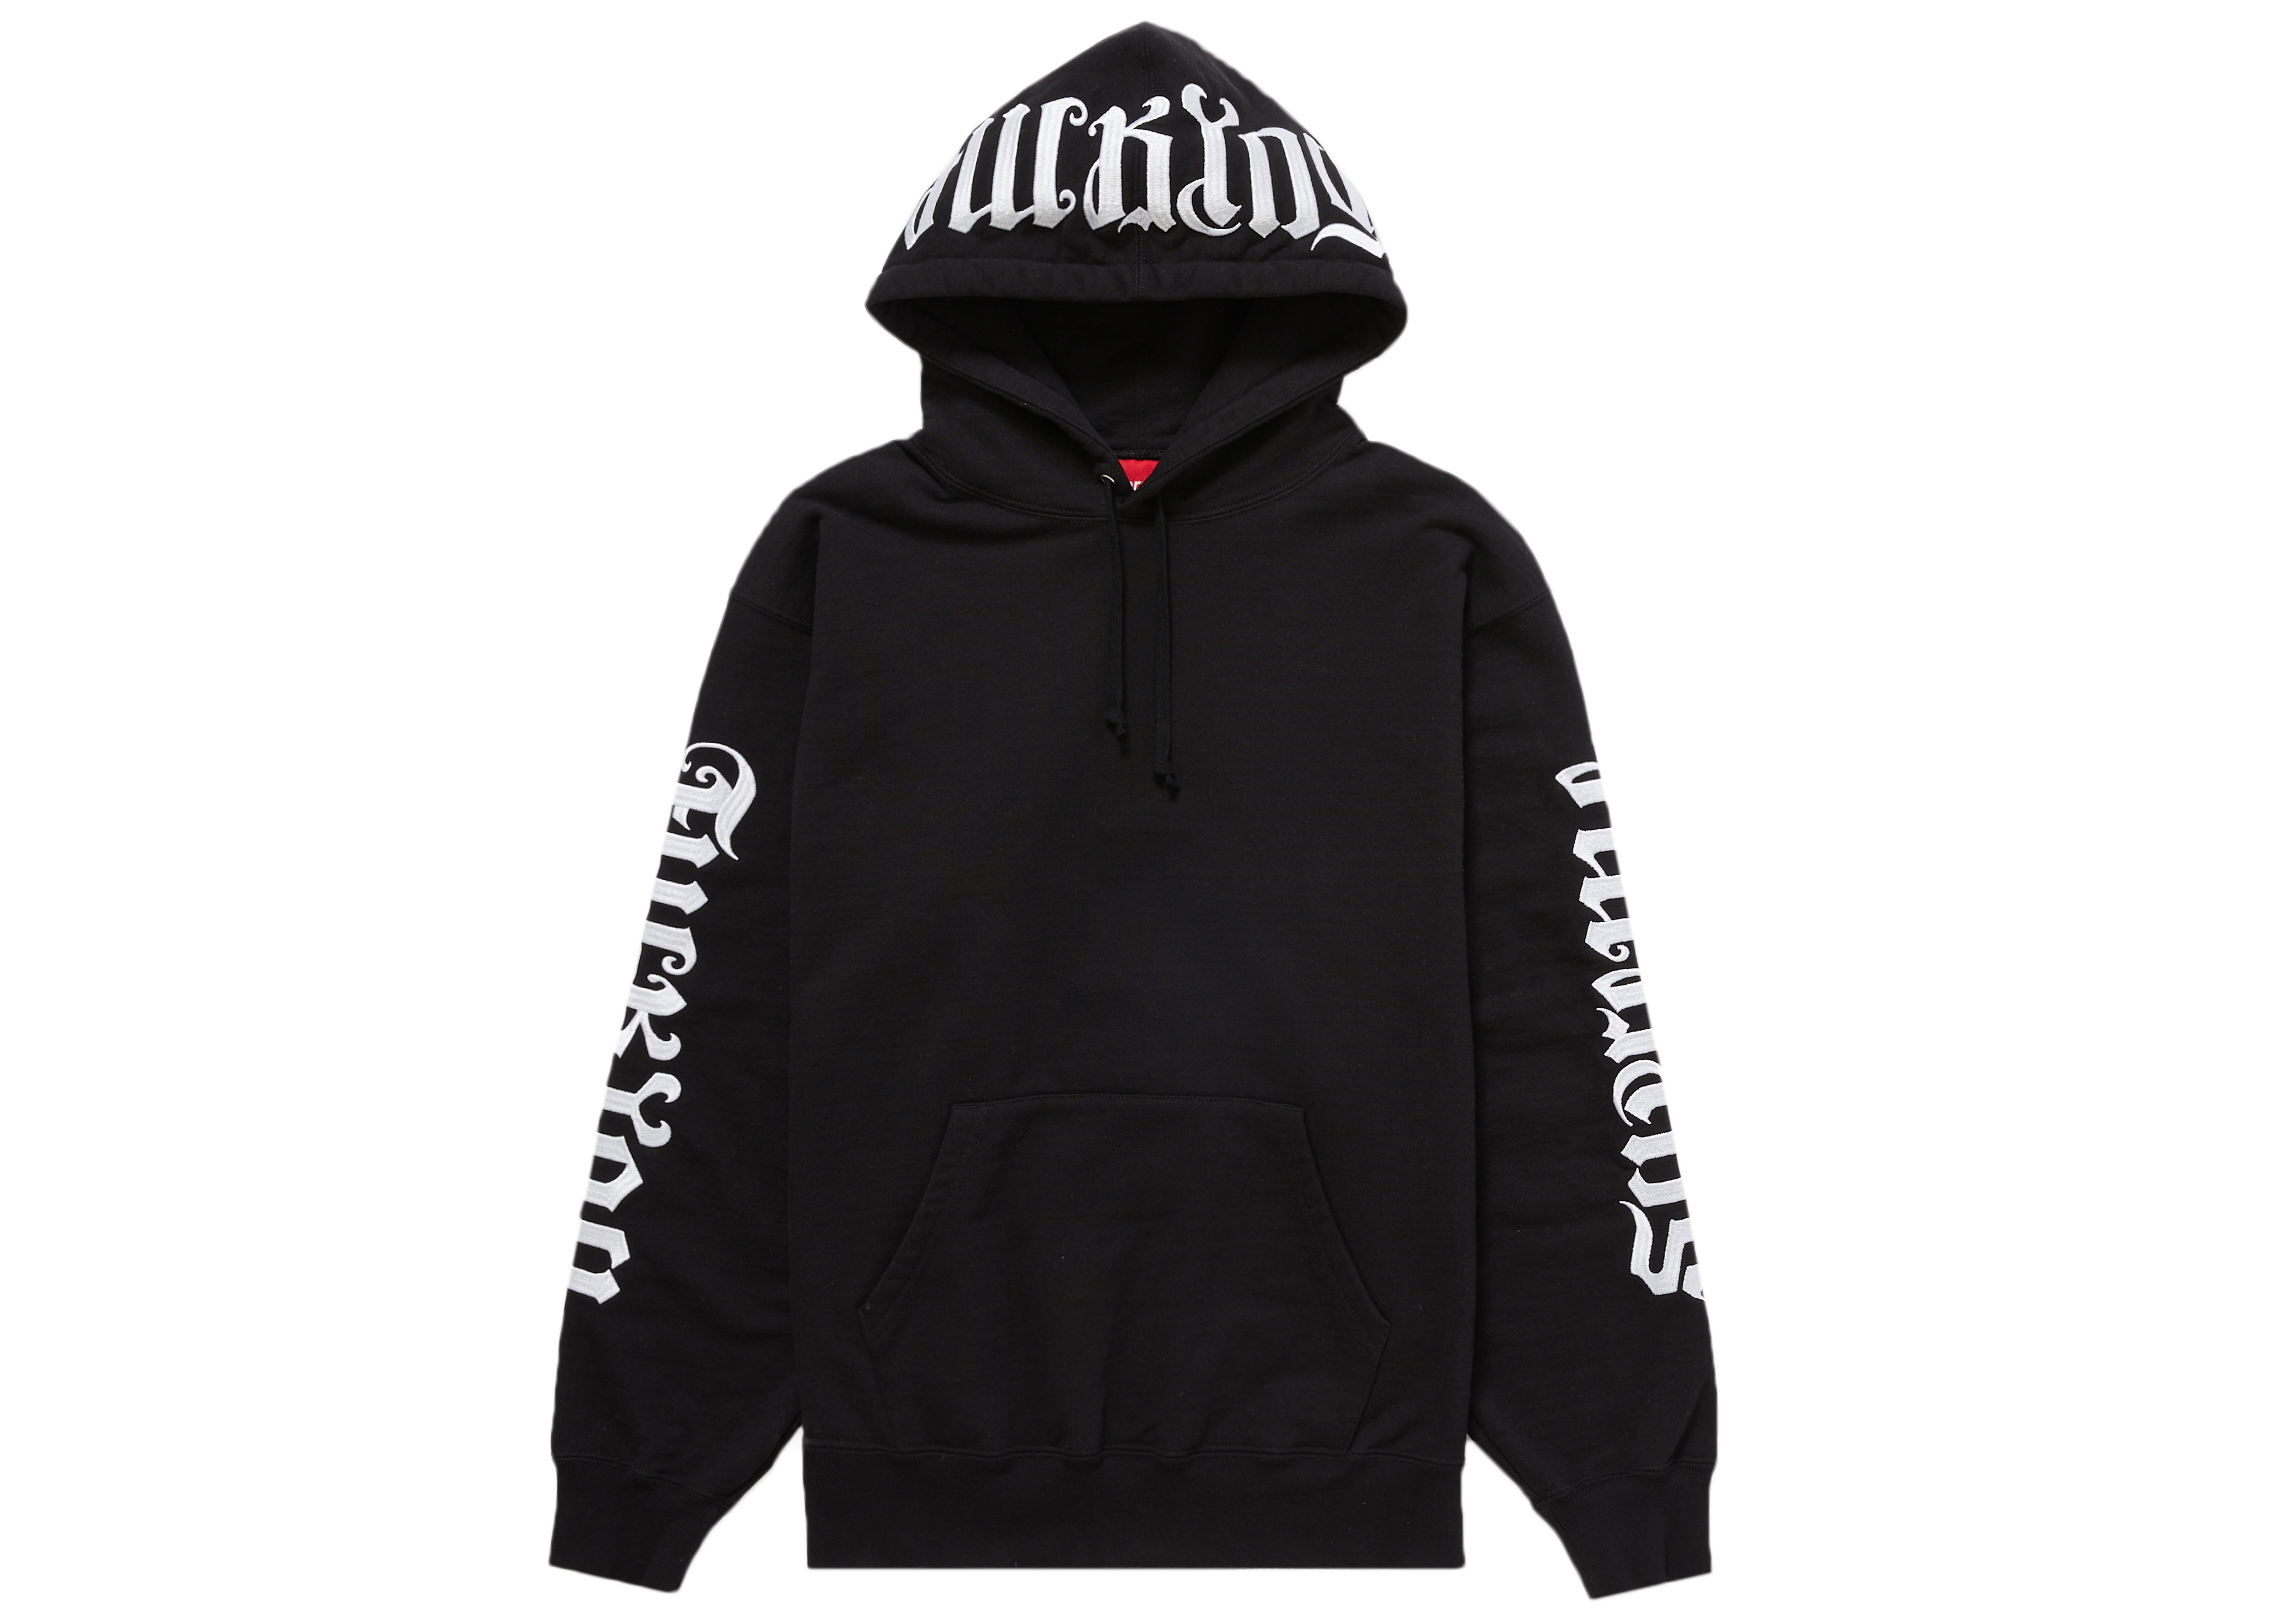 16,800円【Lサイズ】Supreme Ambigram Hooded Sweatshirt